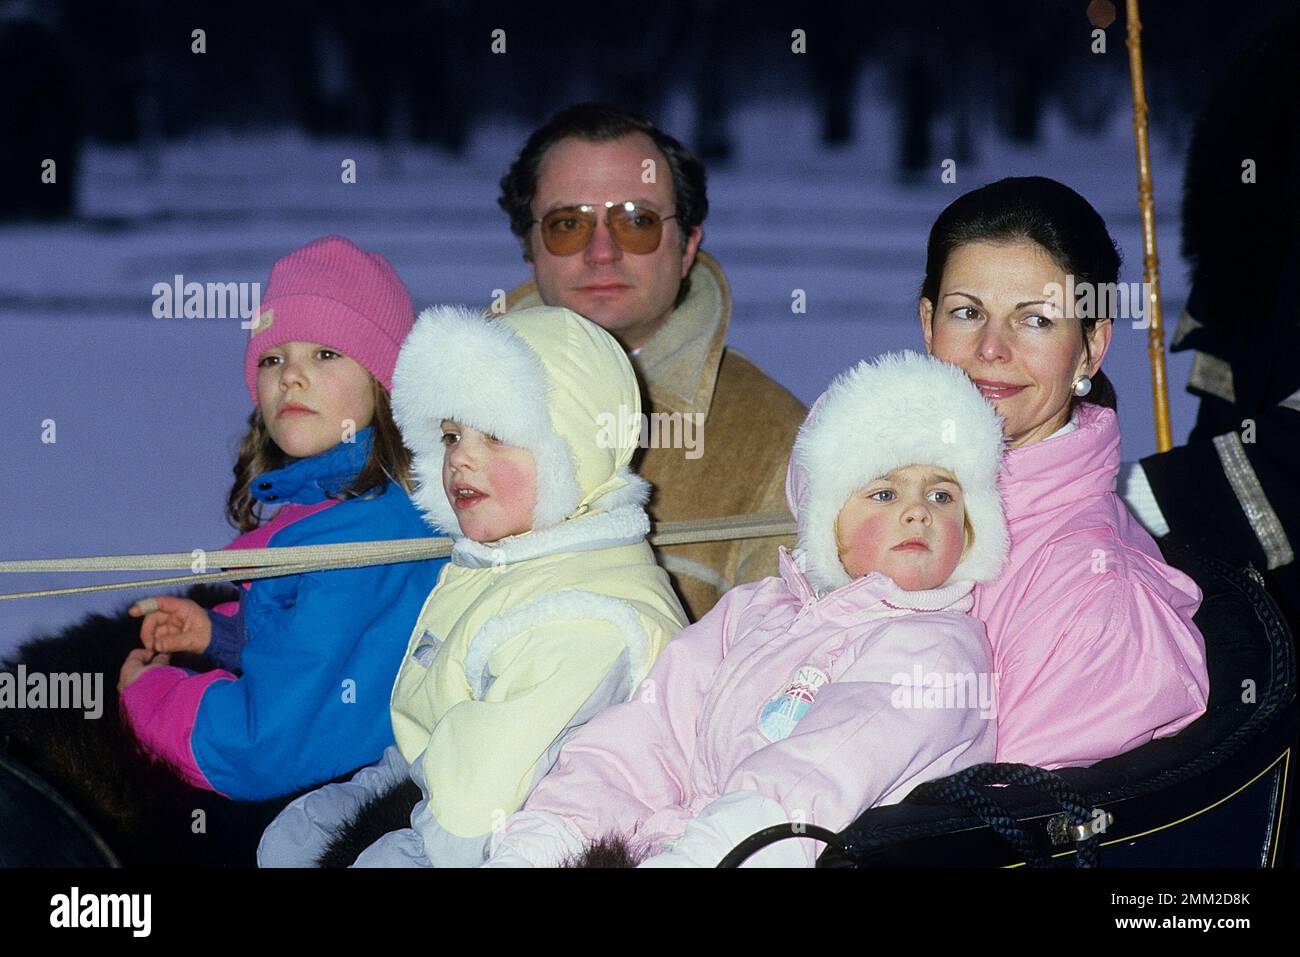 Carl XVI Gustaf, re di Svezia. Nato il 30 aprile 1946. Il re Carlo XVI Gustaf, la regina Silvia e i loro figli, la principessa Madeleine, la principessa della corona Victoria, il principe Carl Philip, raffigurato nel parco del castello di Drottningholm 1985 durante la sessione fotografica annuale natale/inverno. Foto Stock